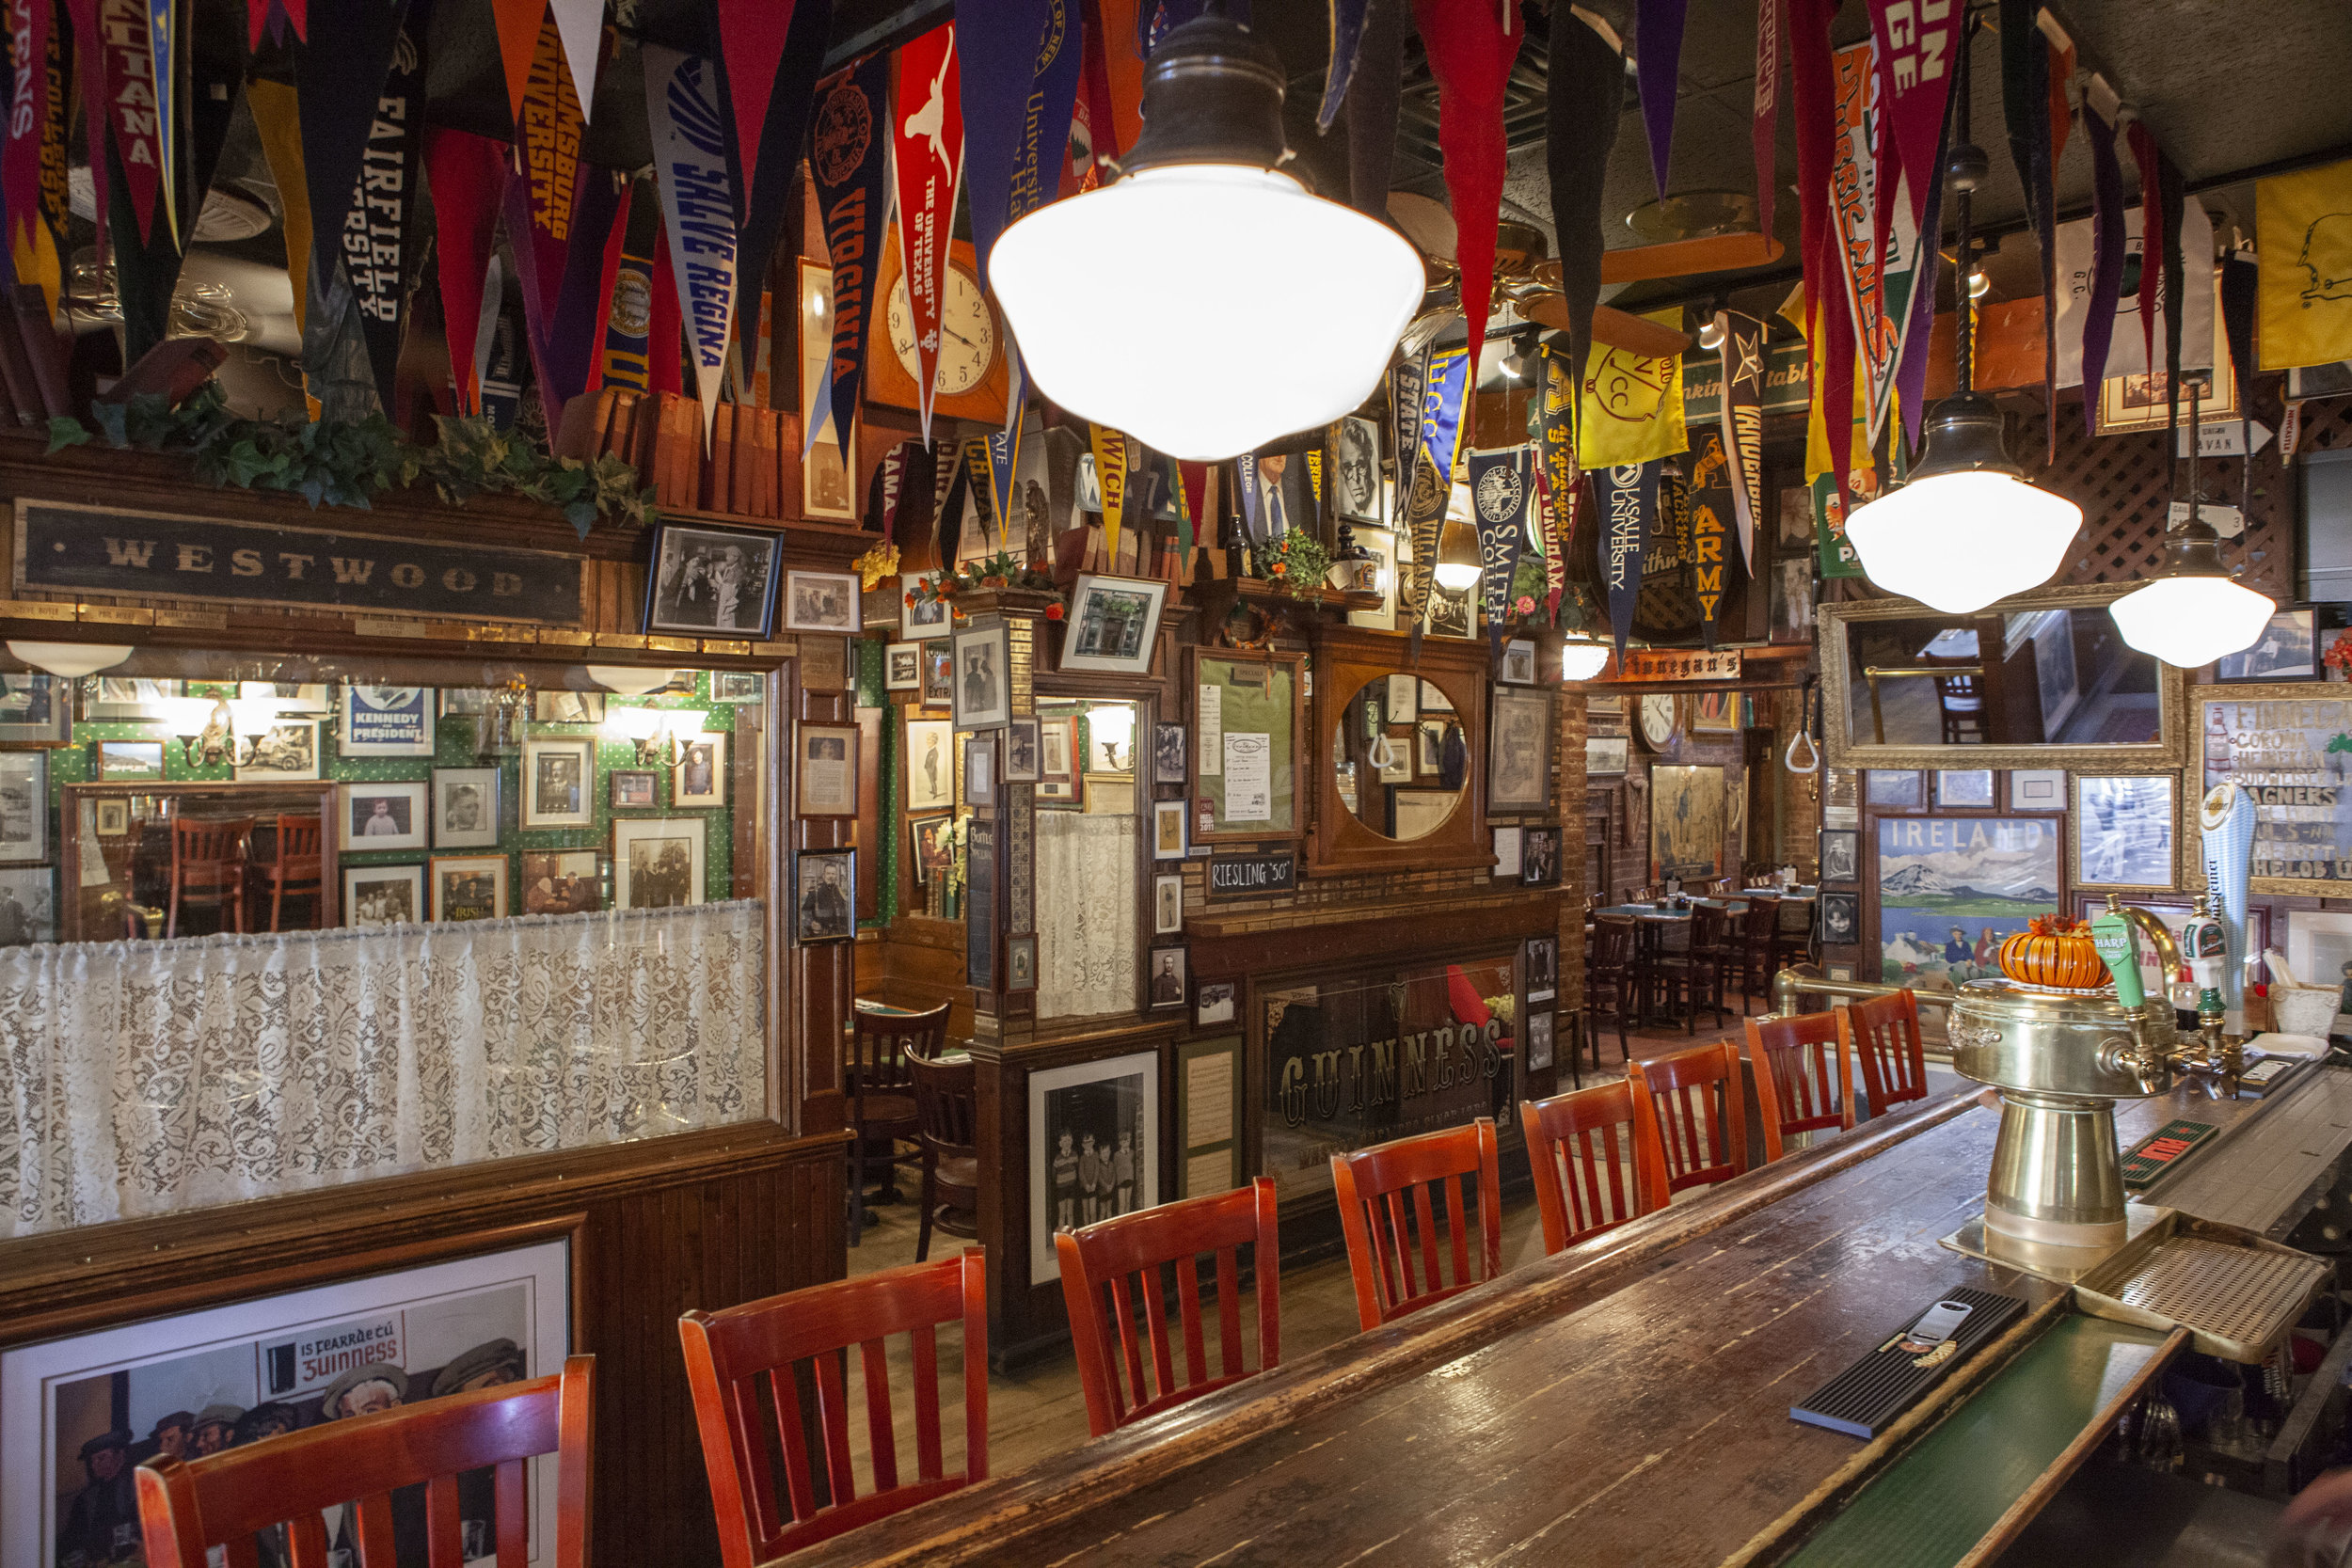 Westwood-PJ-Finnegan's-NJ-Bergen-bar-beer-food-pub.jpg